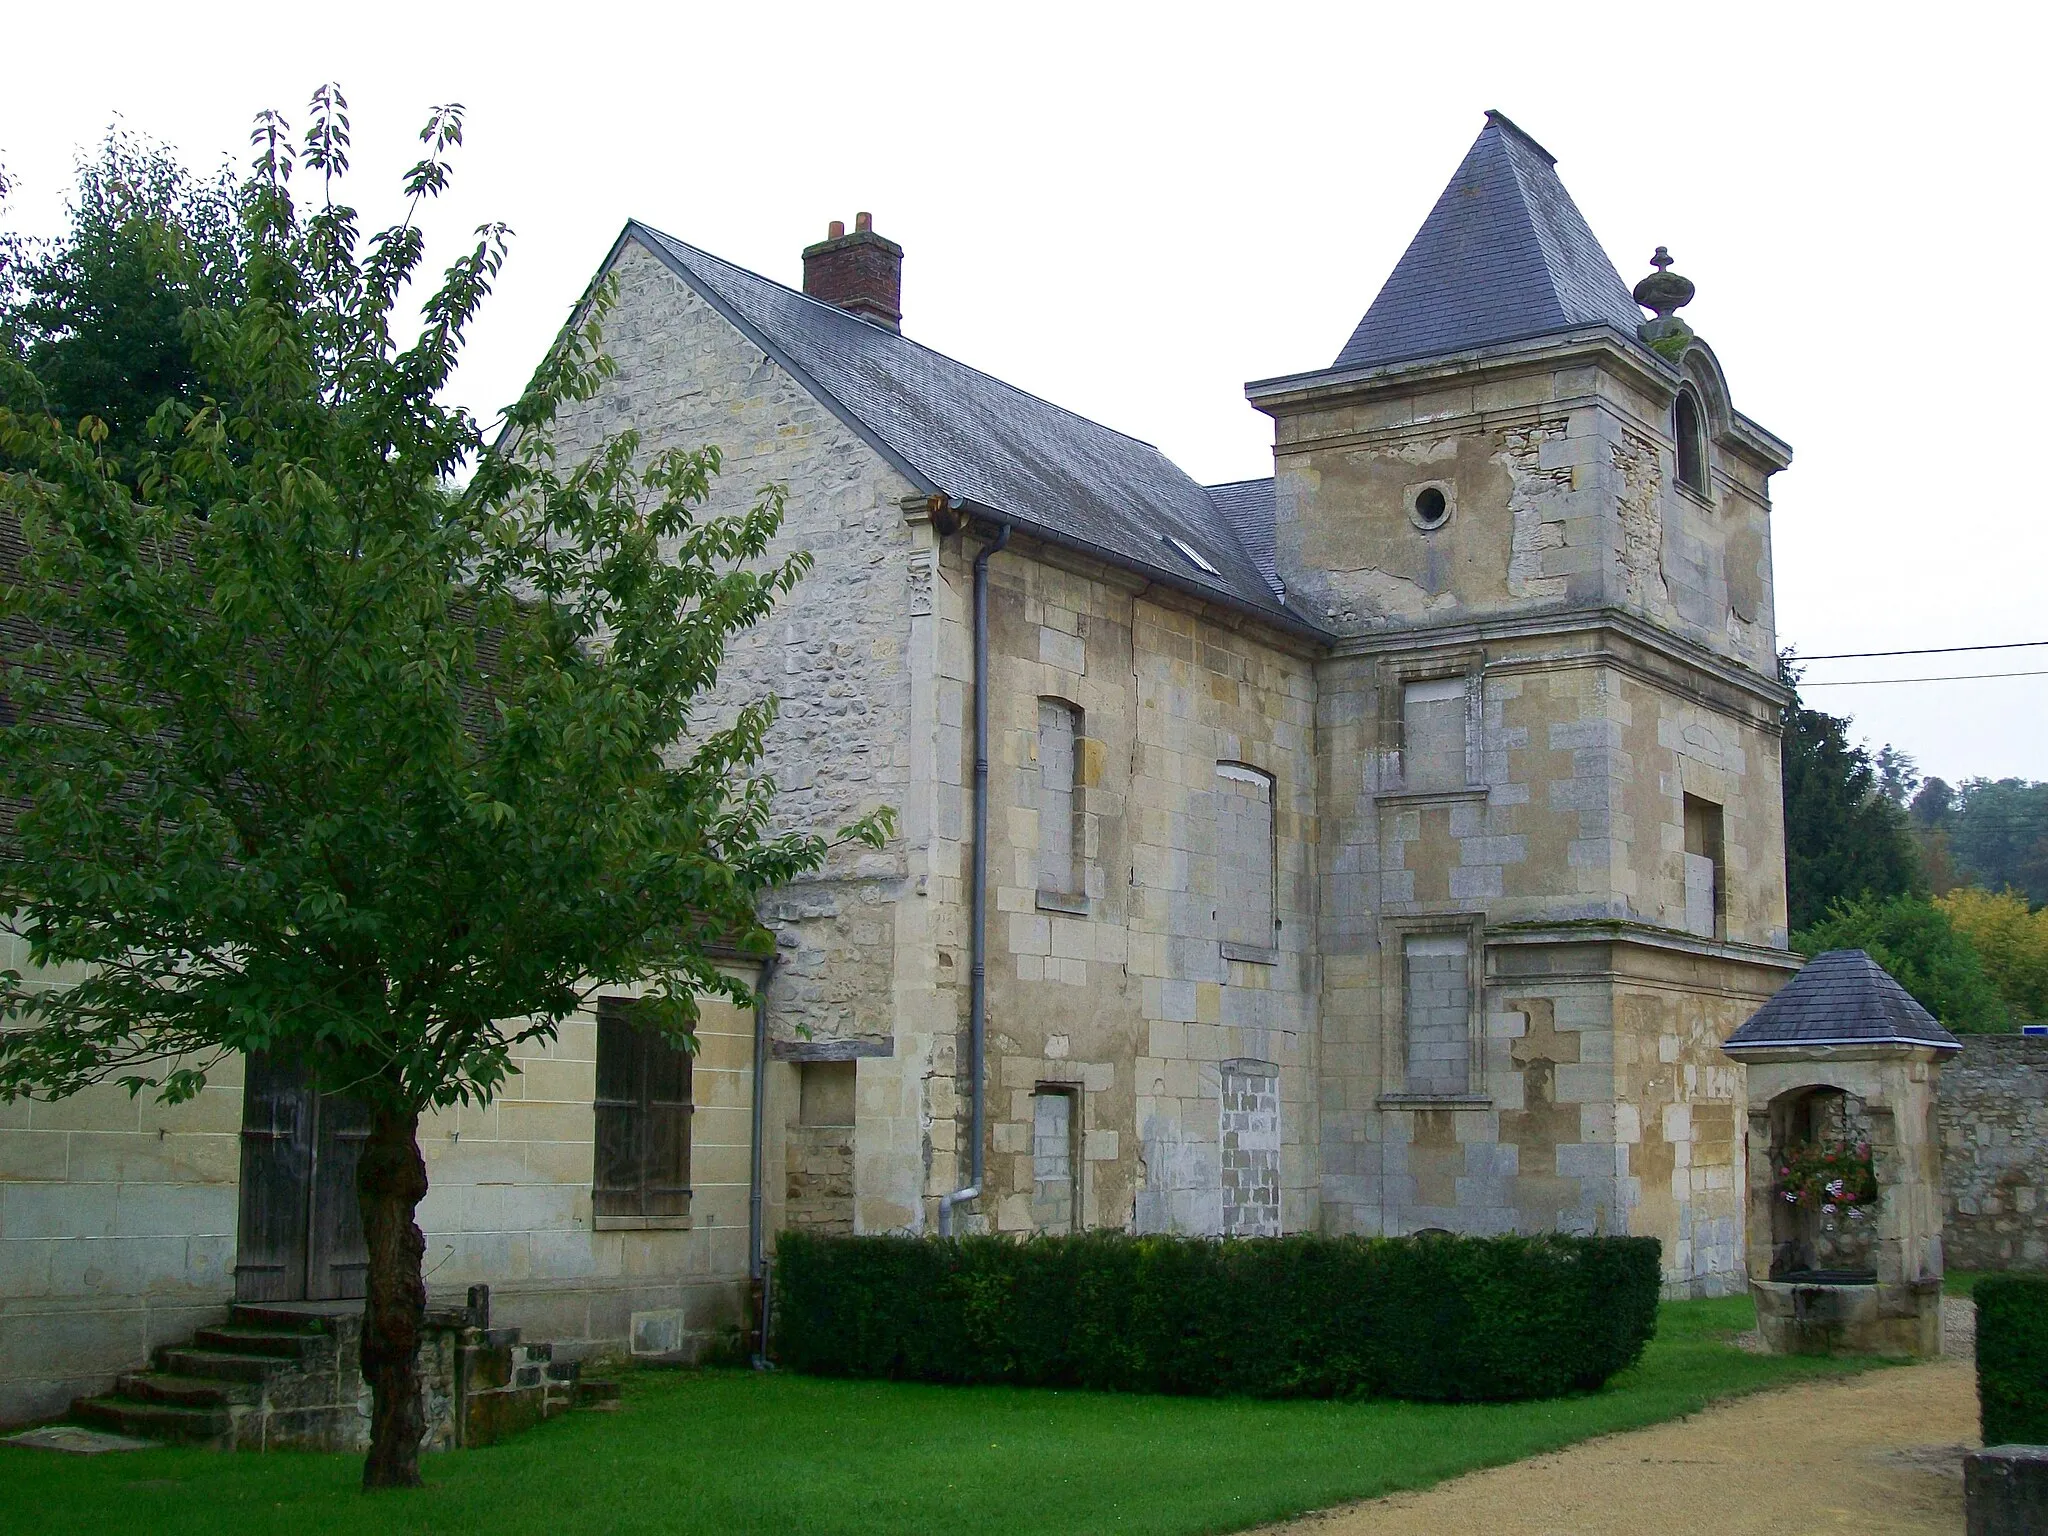 Photo showing: Manoir Salomon de Brosse à Verneuil-en-Halatte (60), ancienne propriété de l'architecte qui lui donna son nom, datation 16e s.